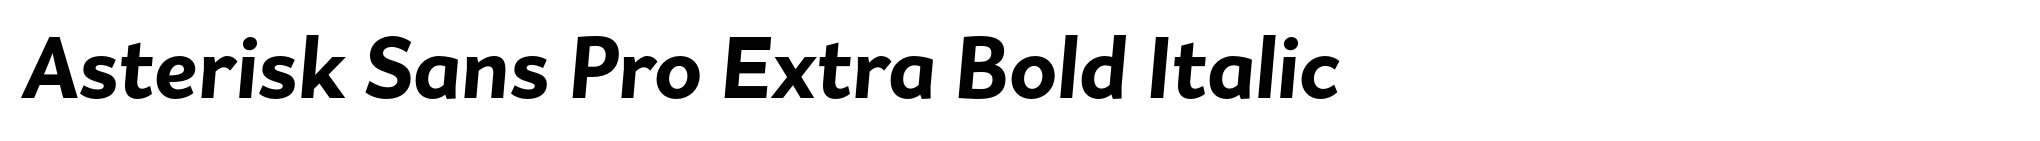 Asterisk Sans Pro Extra Bold Italic image